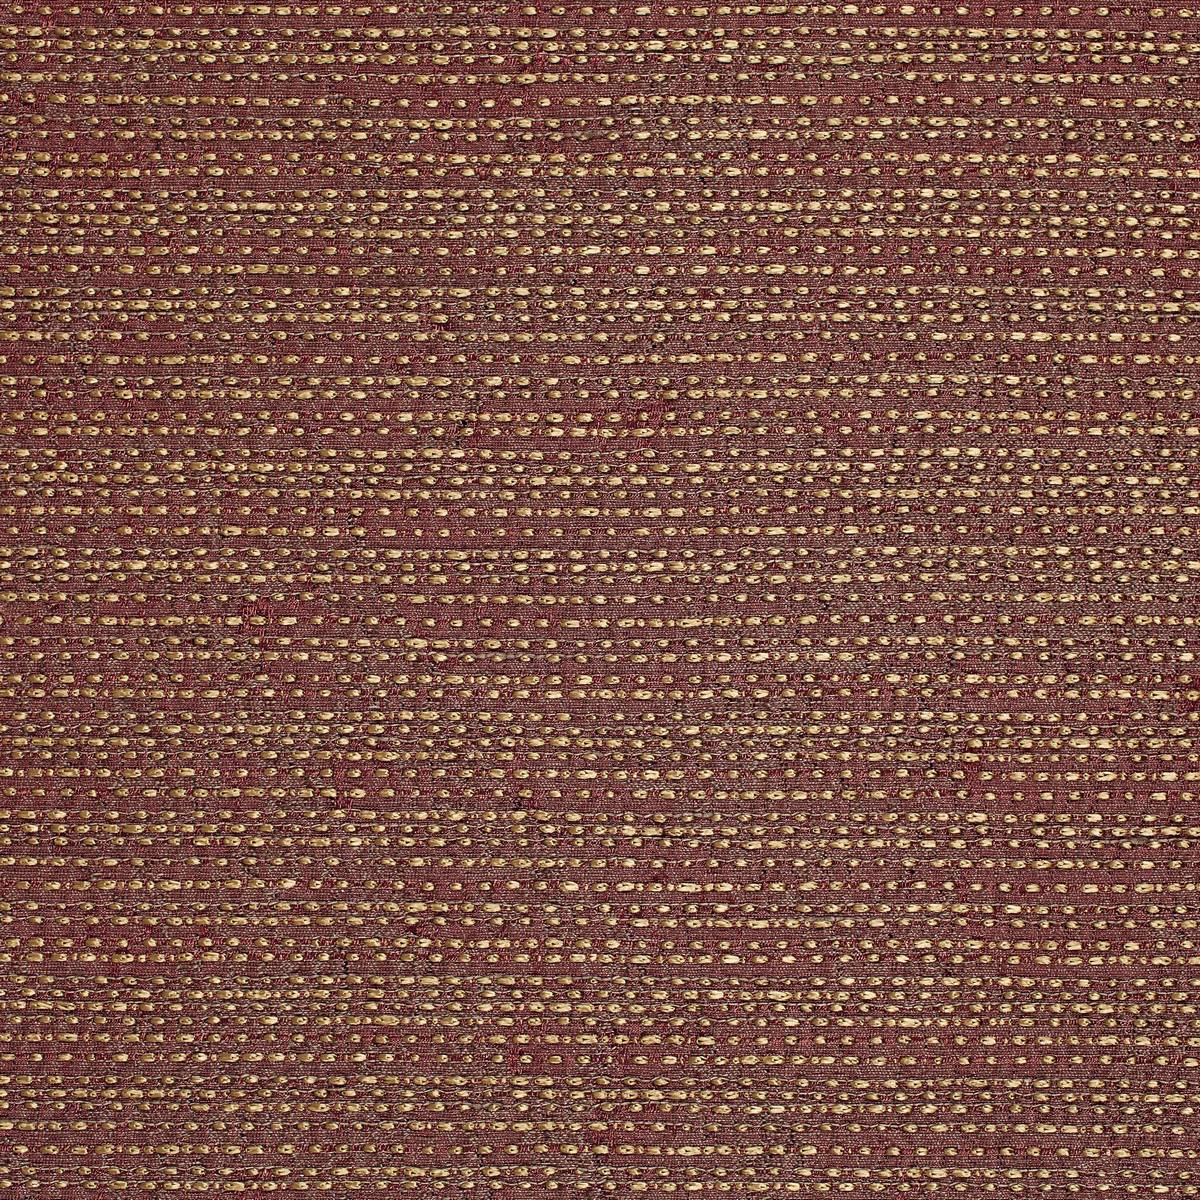 Peruzzi Burgundy Fabric by Zoffany